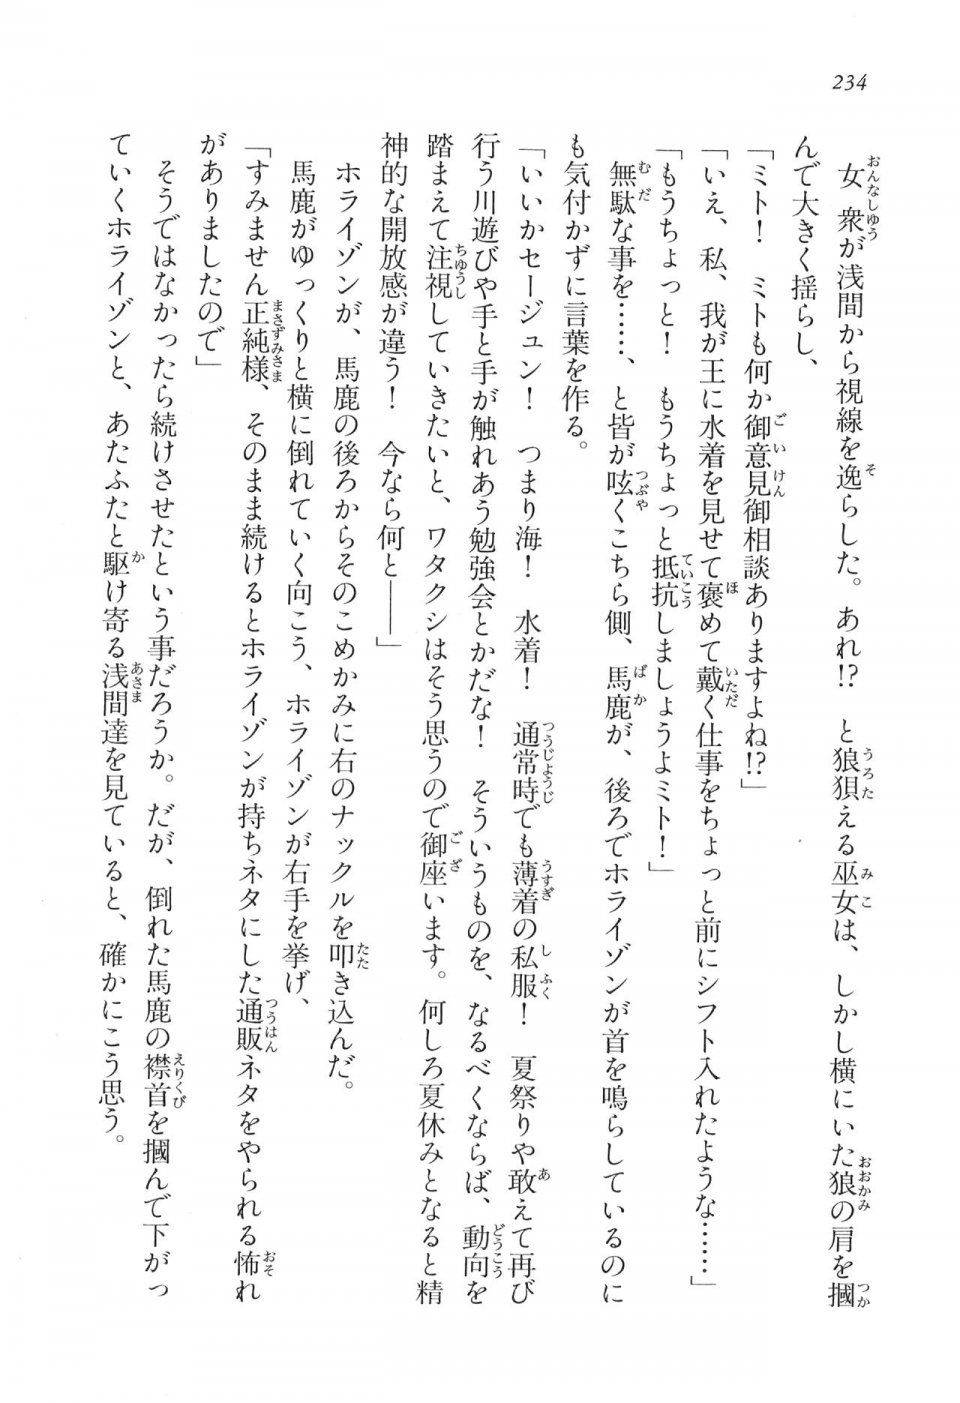 Kyoukai Senjou no Horizon LN Vol 16(7A) - Photo #234